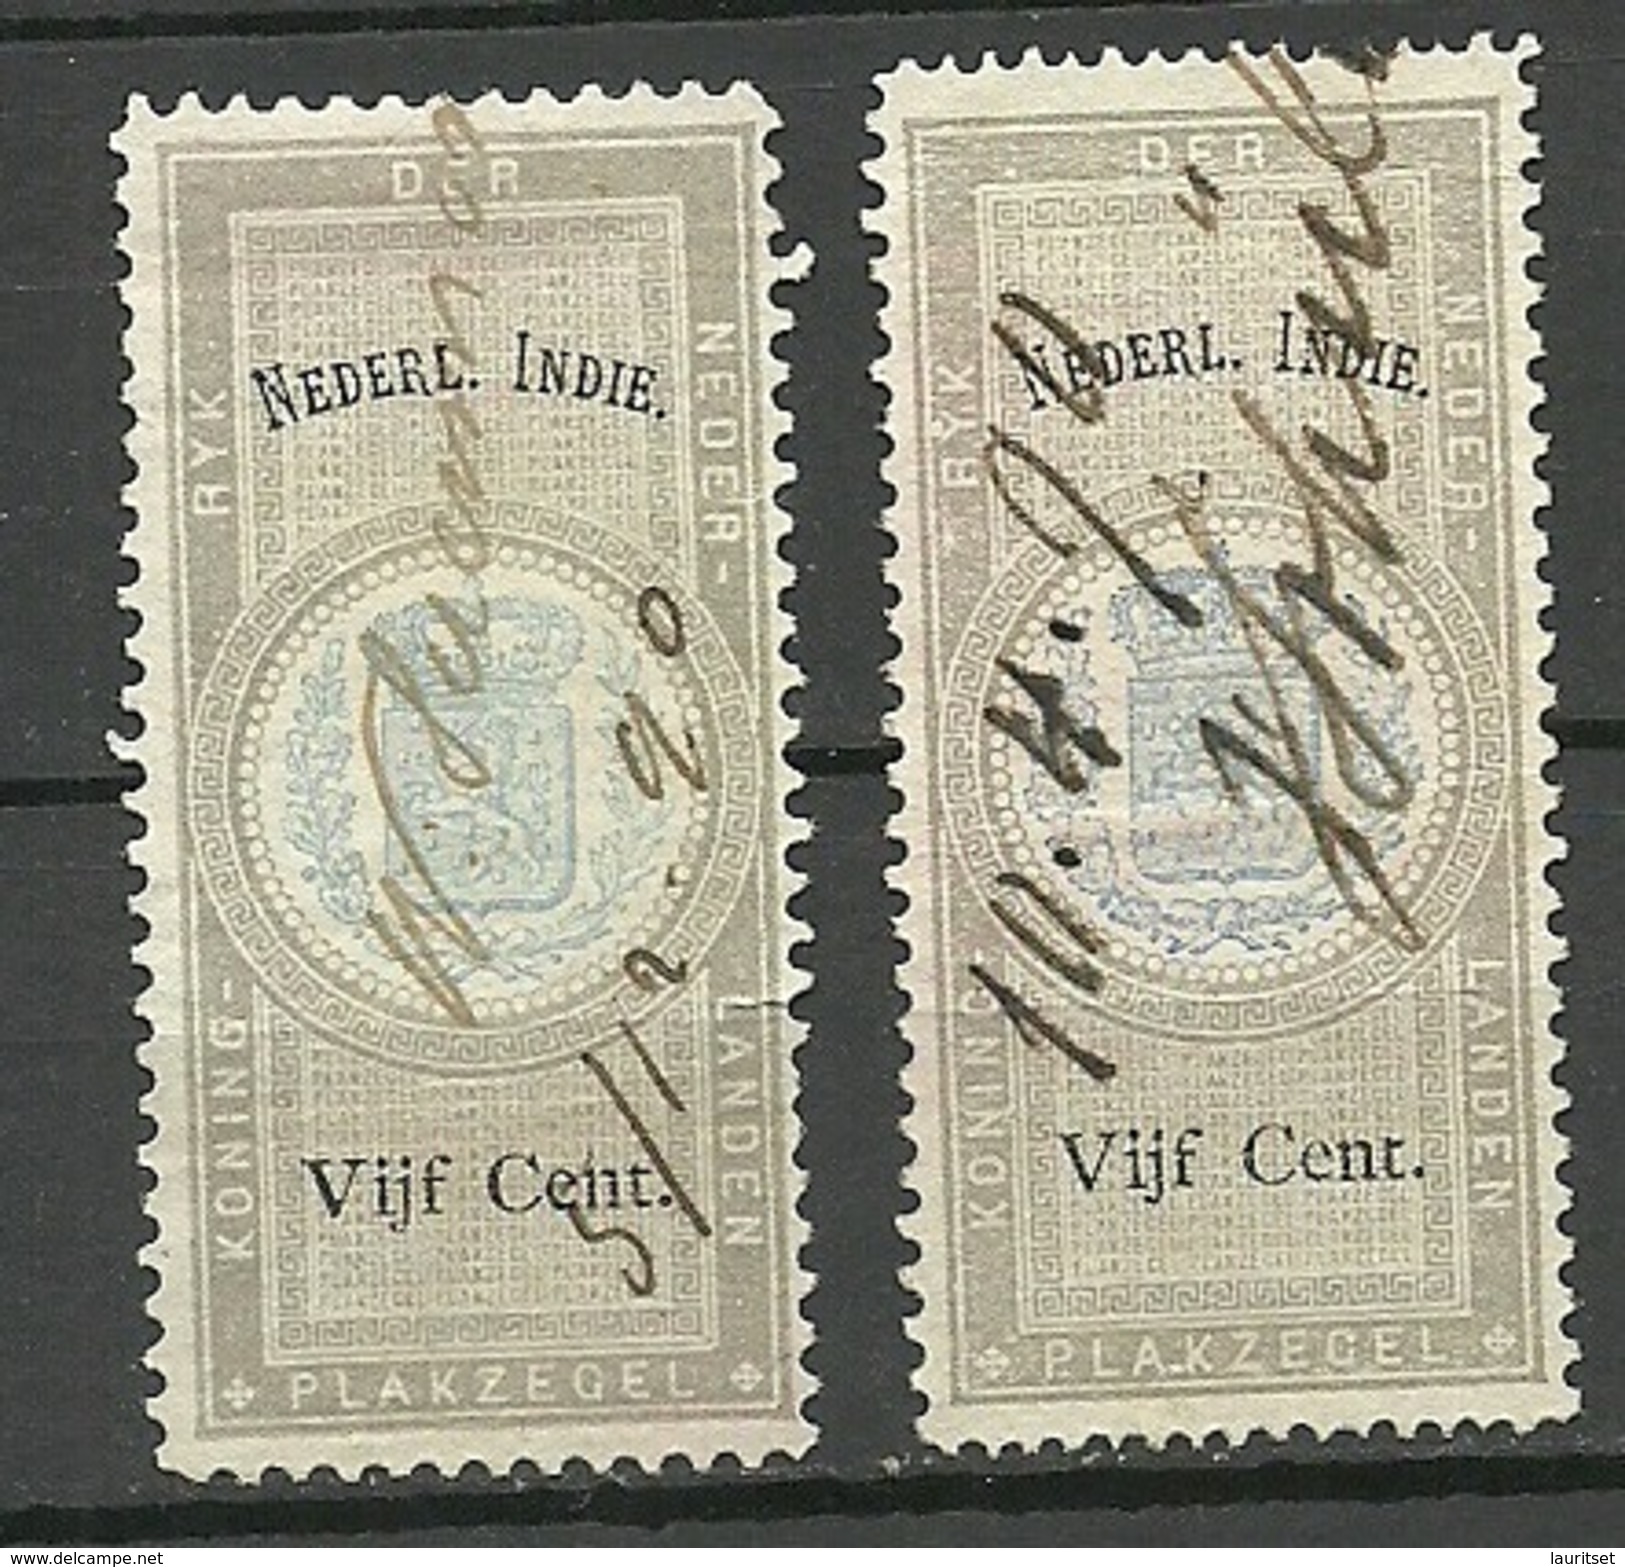 NEDERLAND-INDIE Netherland-India 1890 Old Revenue Tax Stamps O - Nederlands-Indië